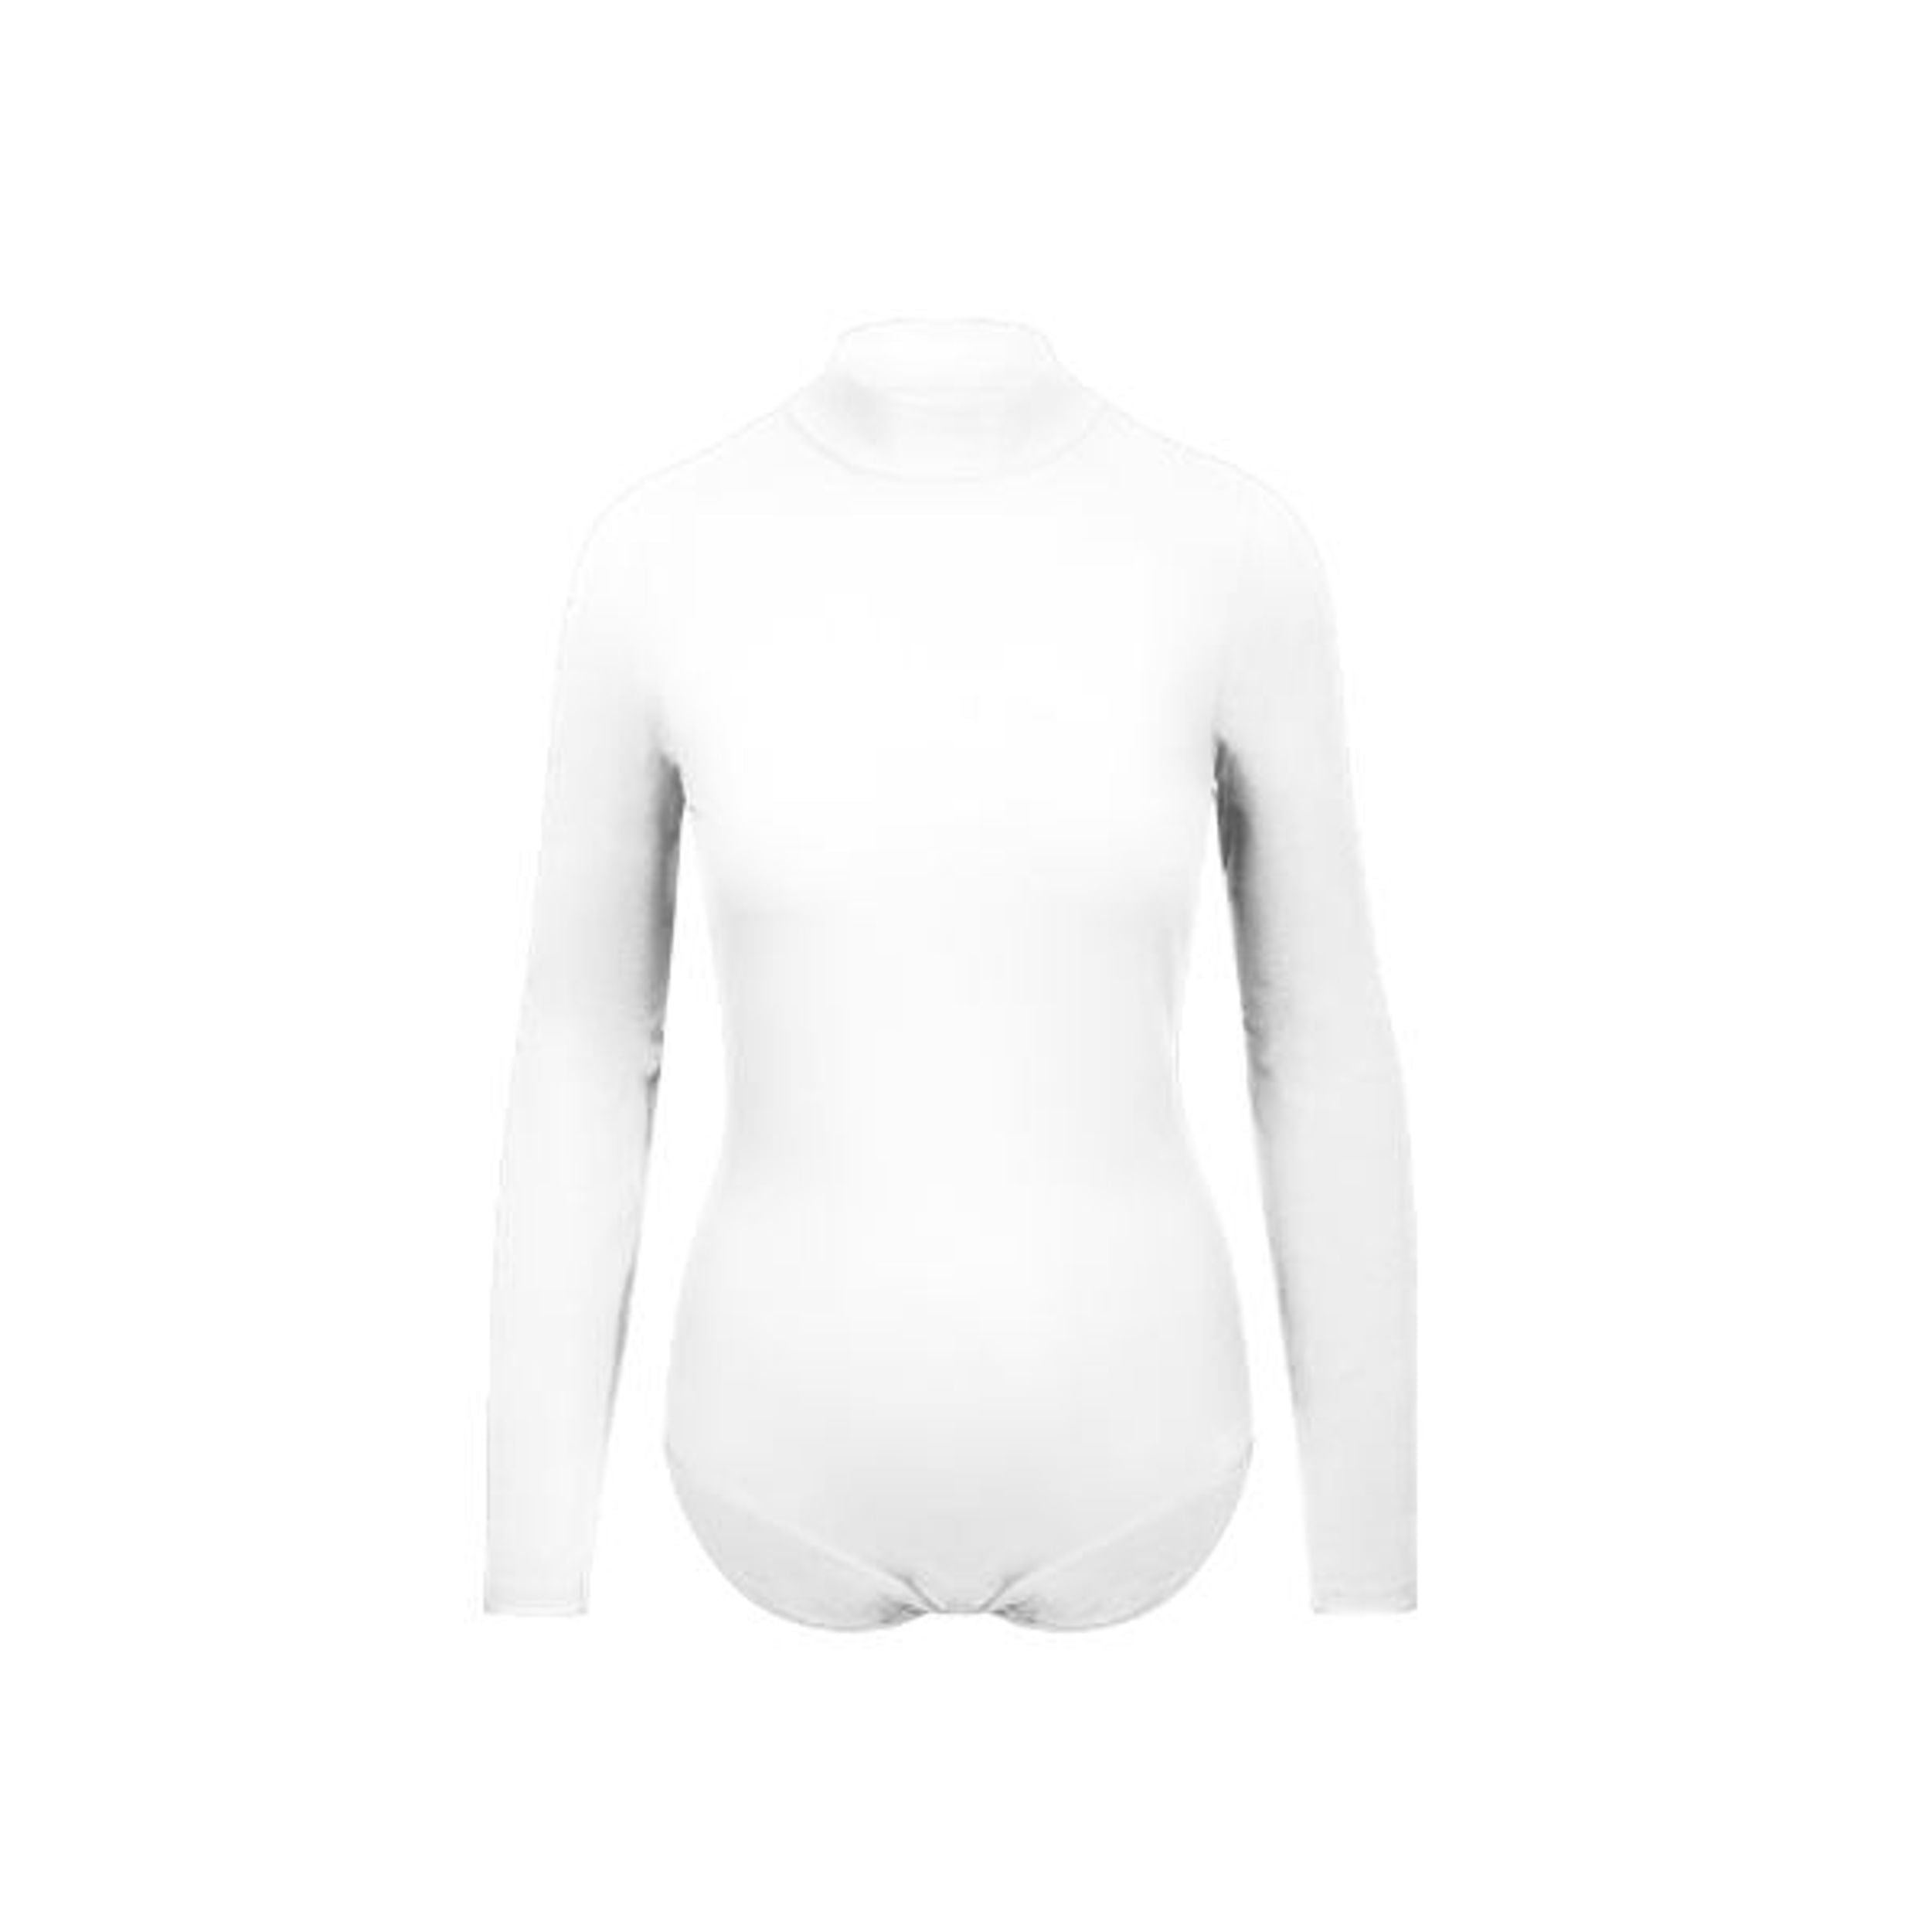 7,350円MOOL×someica Draped bodysuit‐White